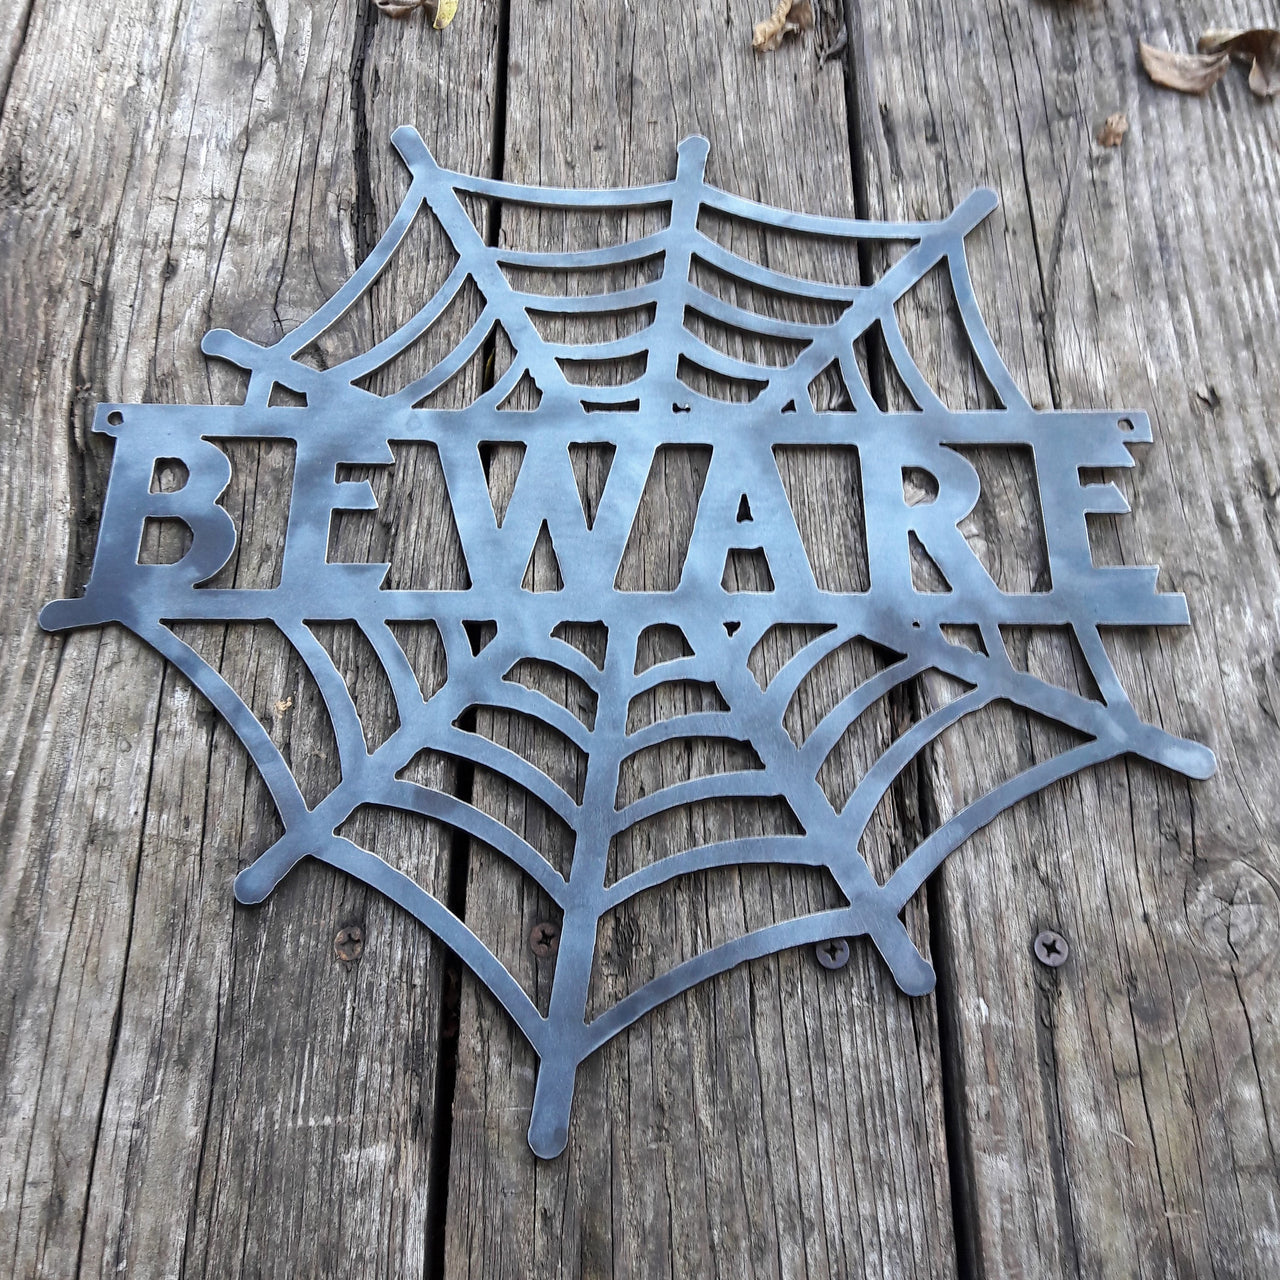 BEWARE Spider Web - Halloween Decorations, Door Hanger, Wall Decor - Custom Metal Sign